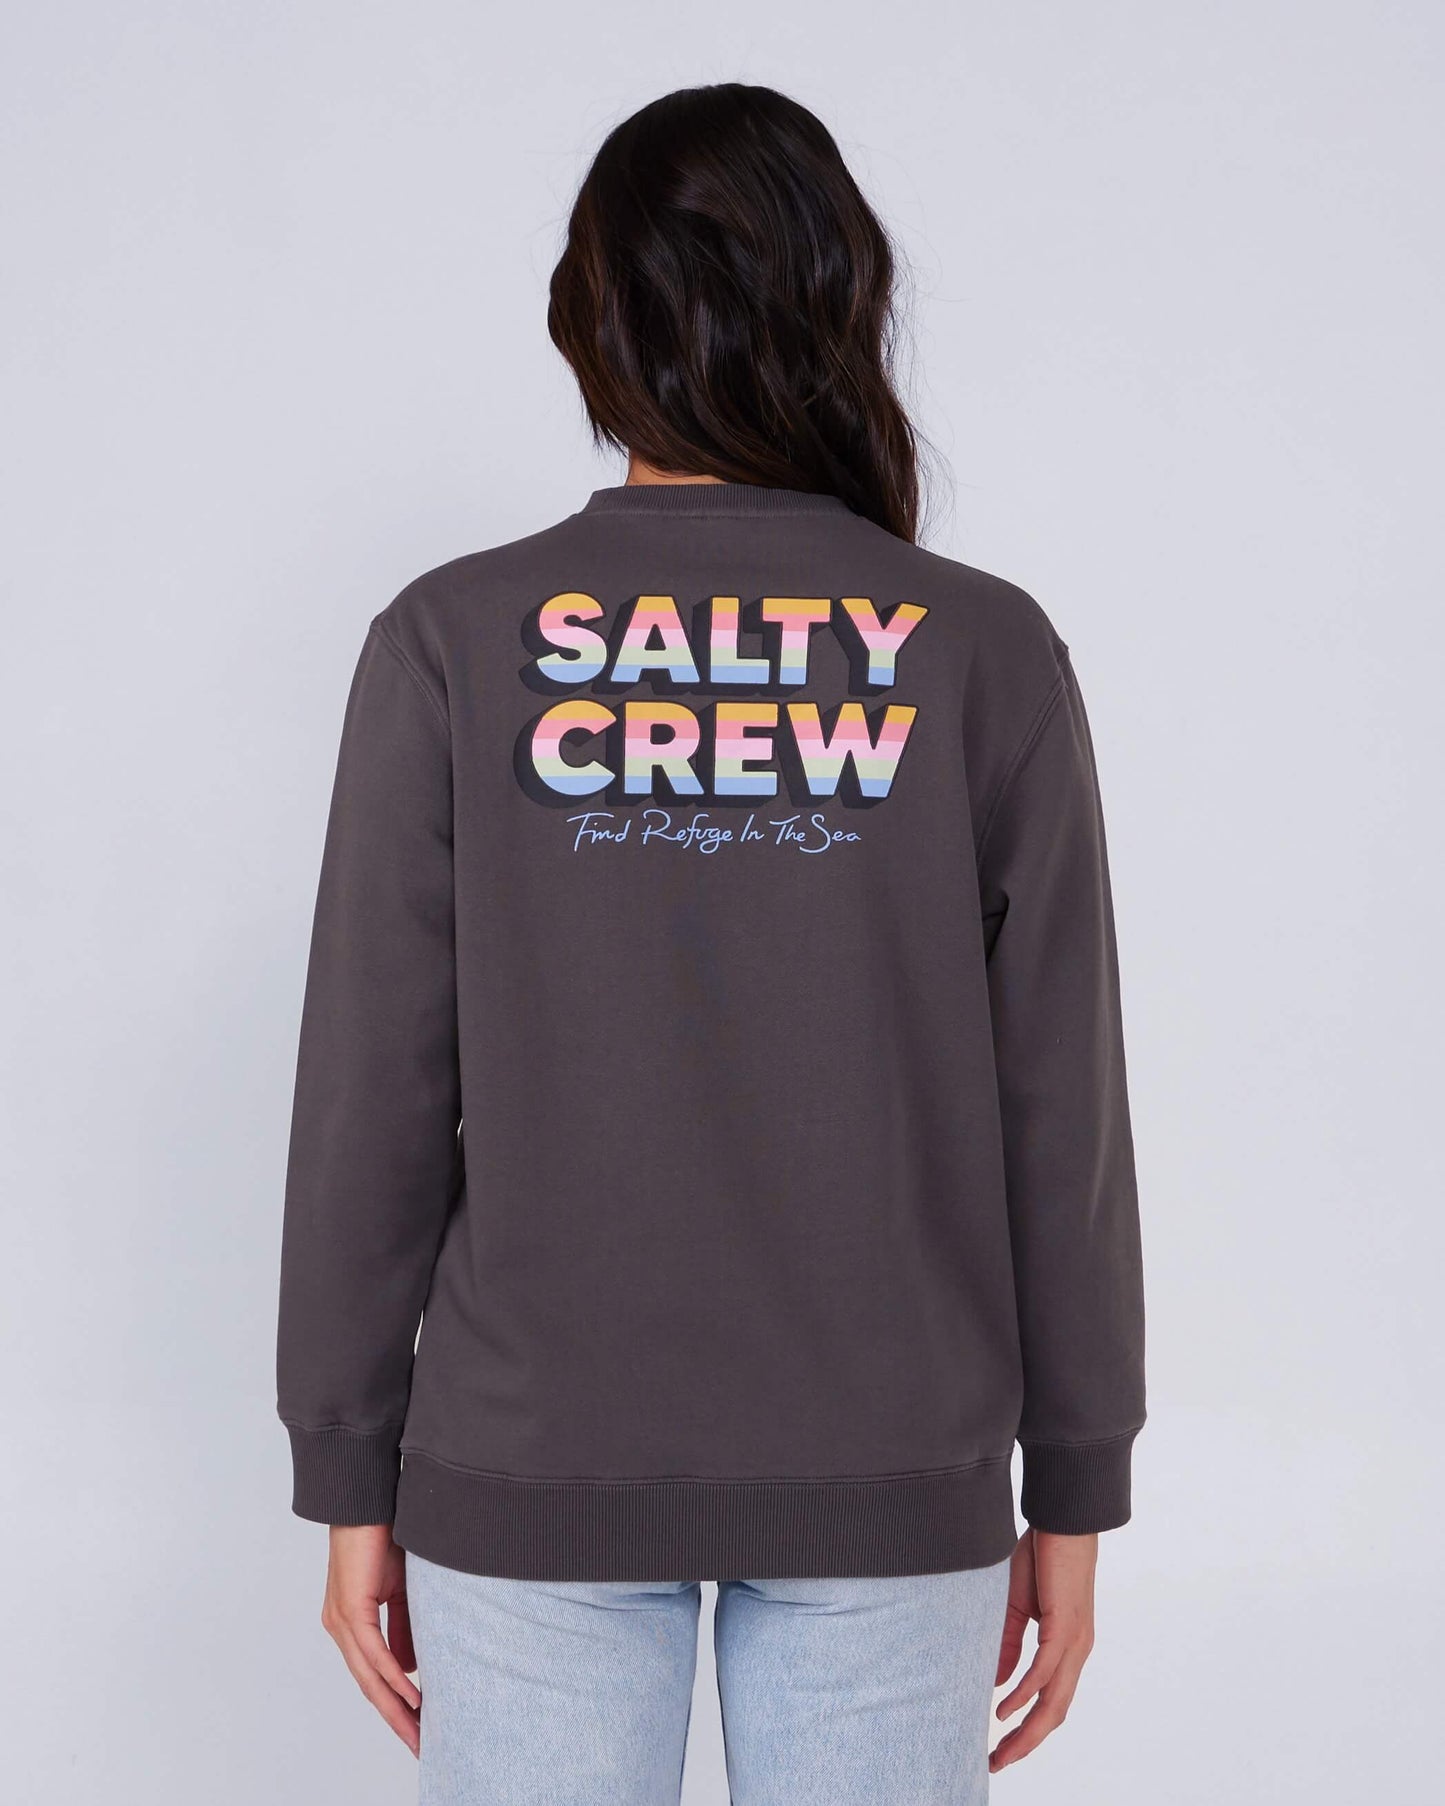 Salty crew FLEECE STANDARD Summertime Premium Crew - Faded Black in Faded Black